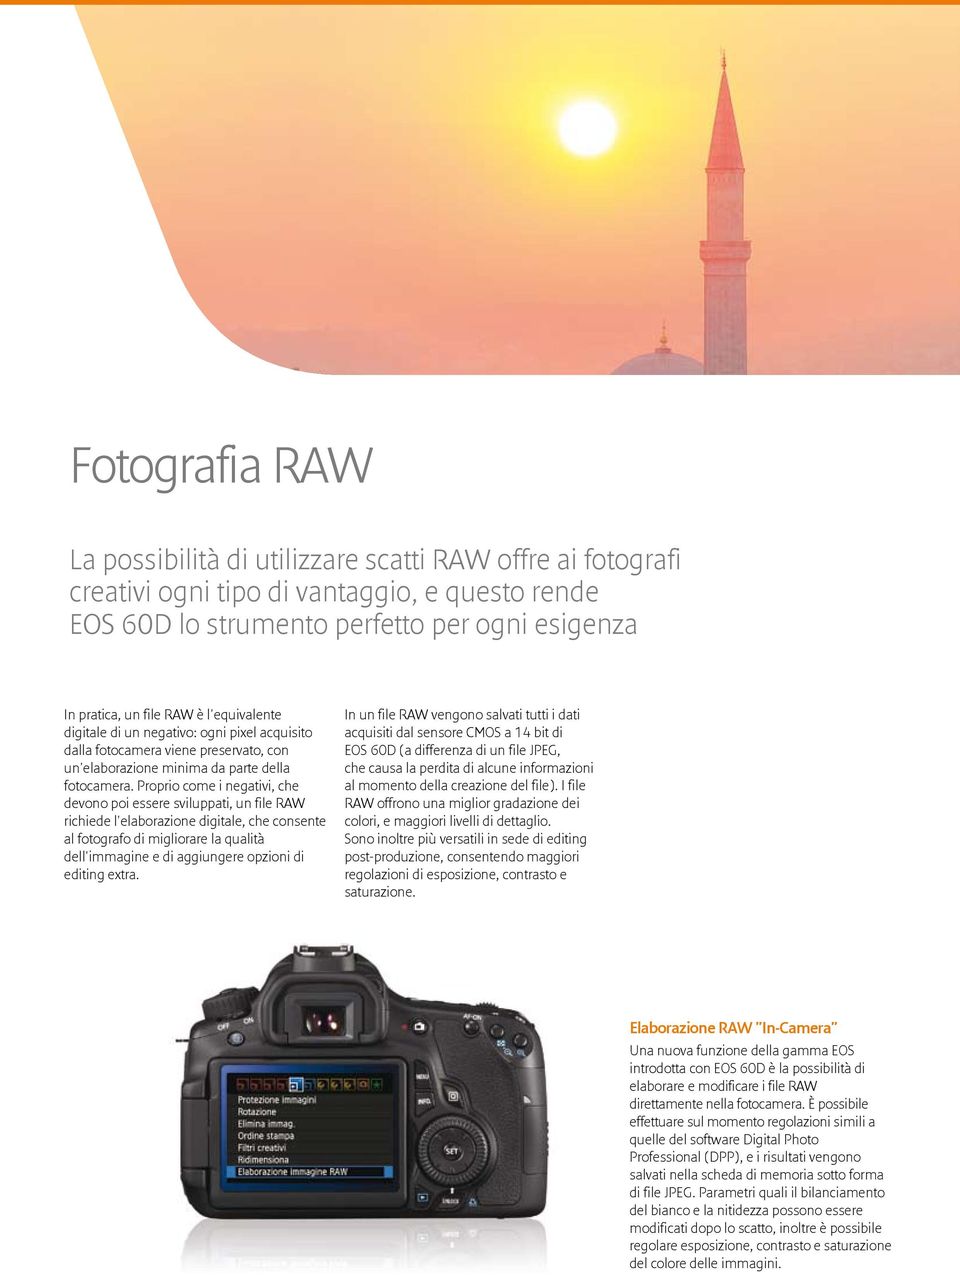 Proprio come i negativi, che devono poi essere sviluppati, un file RAW richiede l'elaborazione digitale, che consente al fotografo di migliorare la qualità dell'immagine e di aggiungere opzioni di